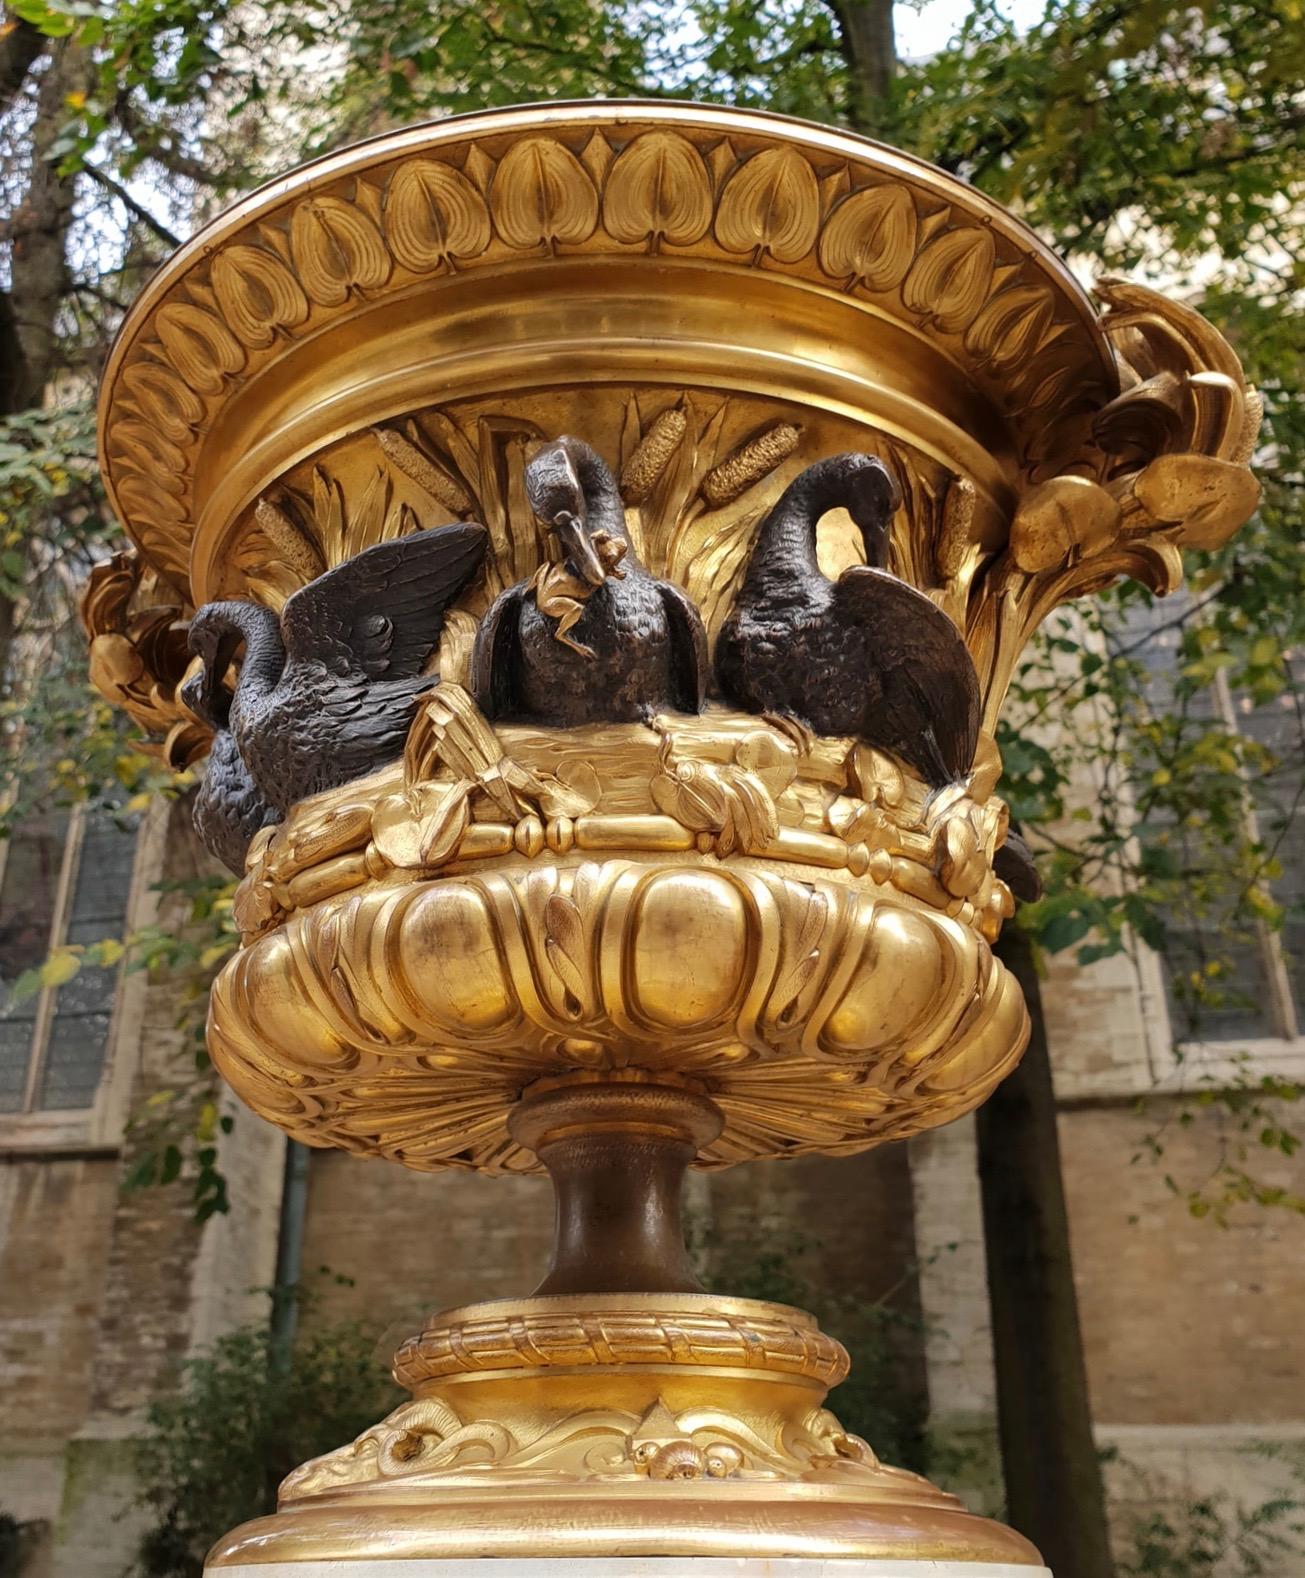 Impressionnant vase ornemental en bronze doré de forme campana, reposant sur un fronton concave moulé en pierre d'agate et une base en forme de croix byzantine.
Le pied concave doré du vase montre des têtes de bélier entrelacées avec des rinceaux